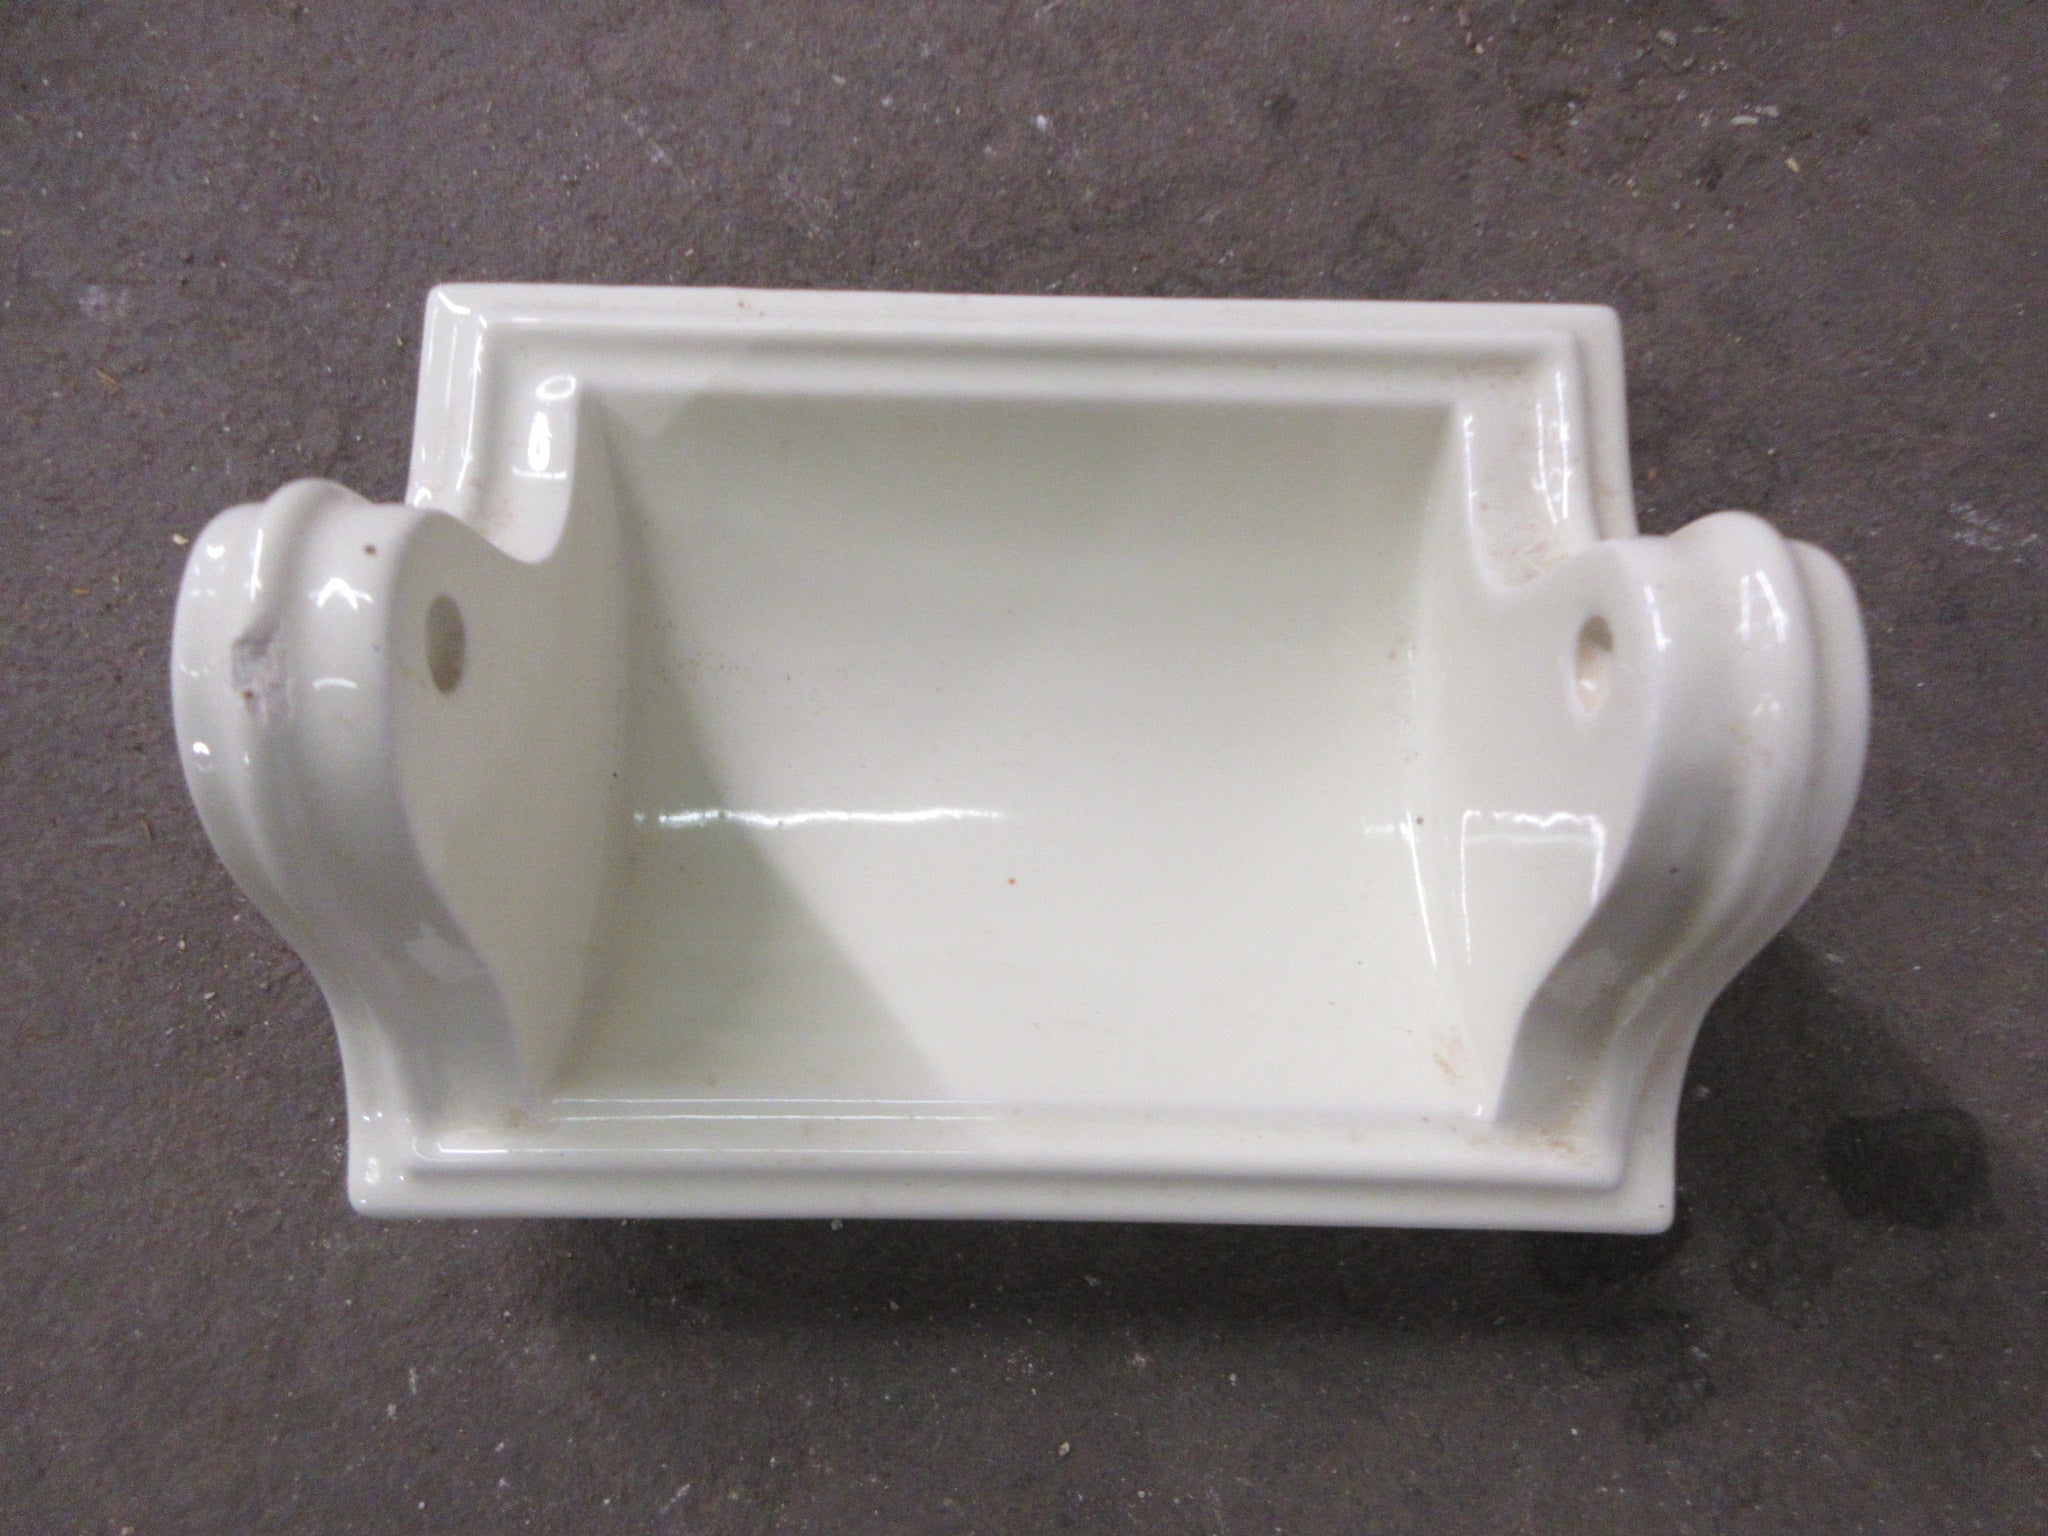 White Ceramic Recessed Toilet Paper Holder - 6 1/2 x 6 1/2 x 3 1/4